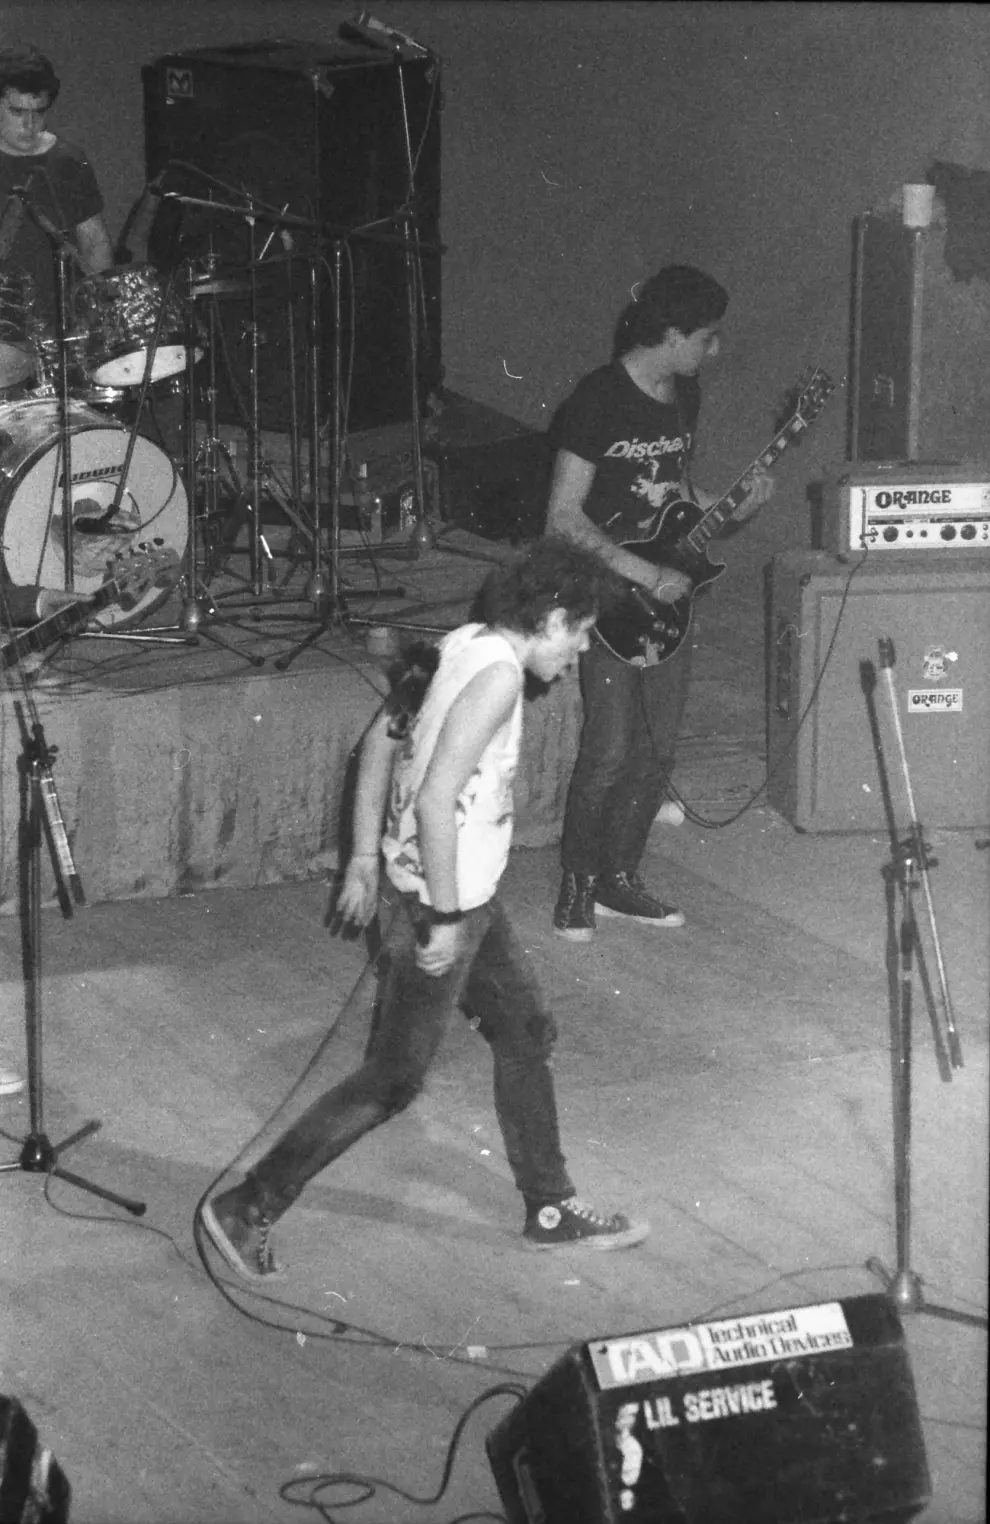 Cincuenta grupos locales, alguno más curtido, otros totalmente desconocidos e integrados por adolescentes que solo habían actuado en colegios o institutos, subieron al escenario en la Muestra de Pop-Rock y Otros Rollos (Zaragoza, 1984).